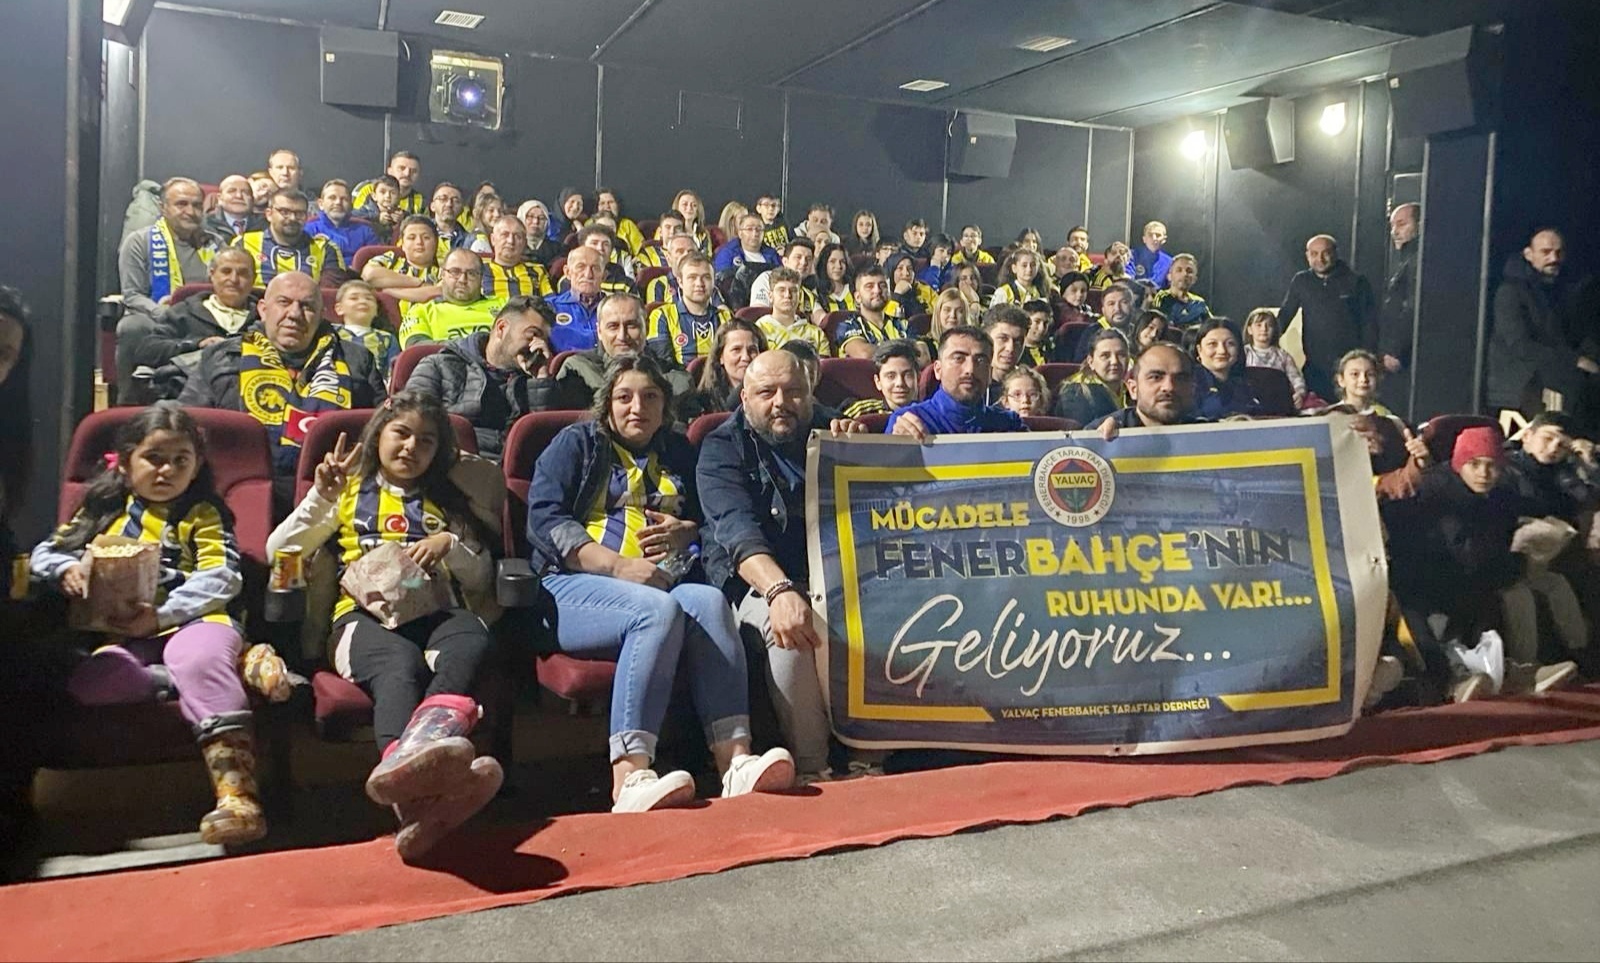 Fenerbahçeliler Derneği’nden Zaferin Rengi etkinliği